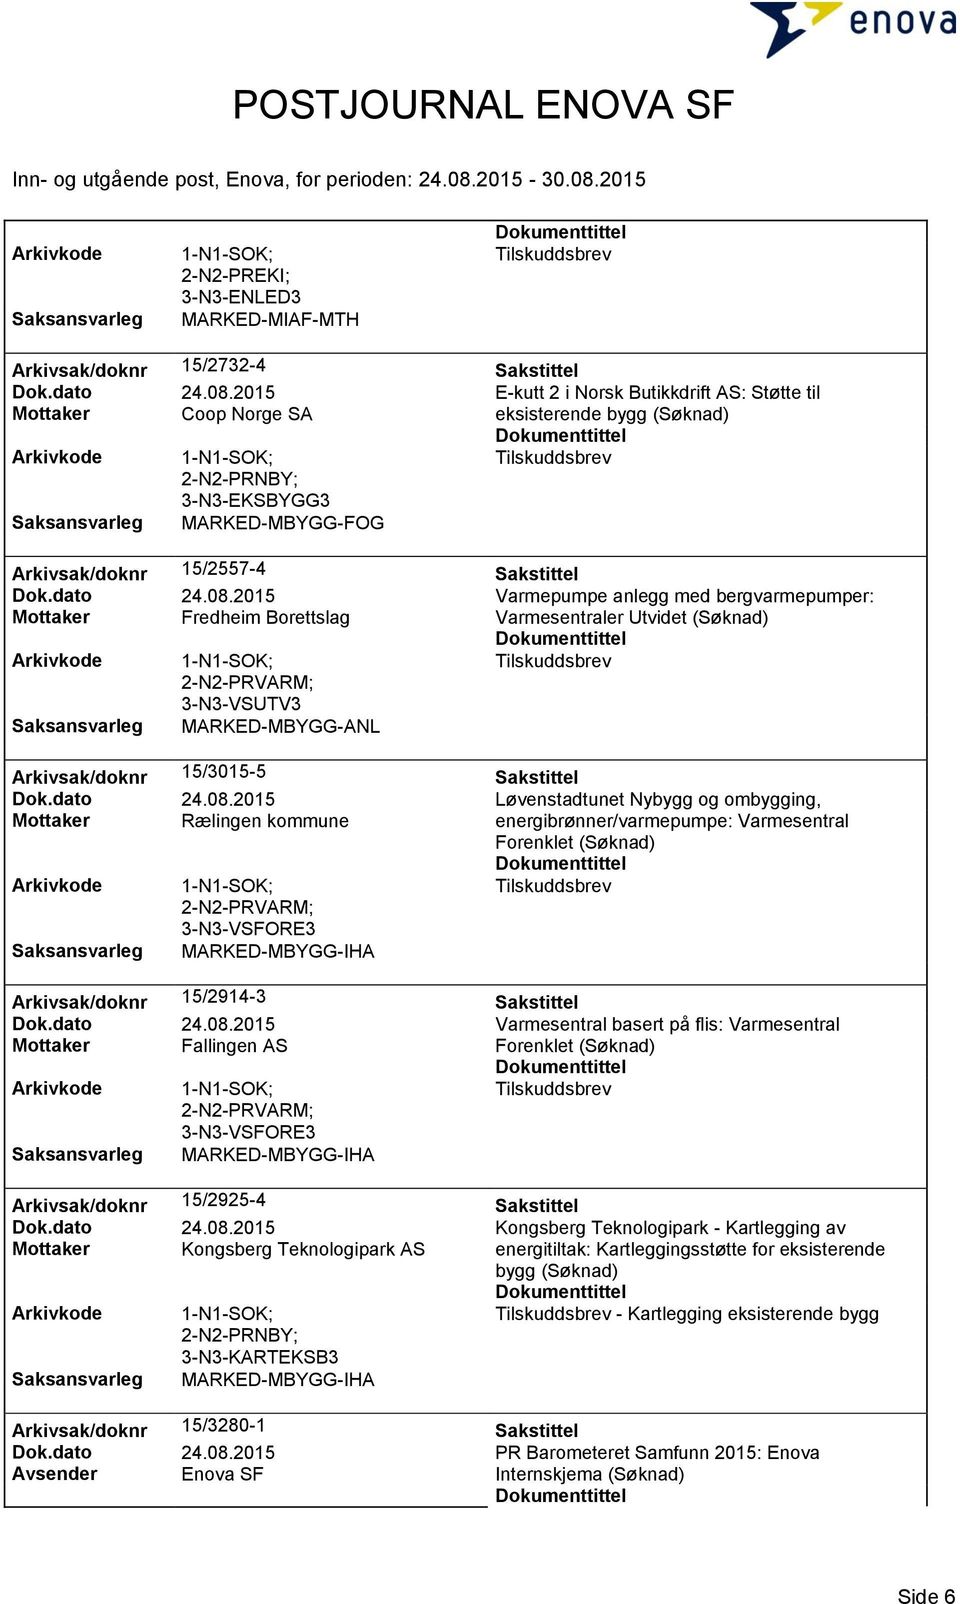 2015 Varmepumpe anlegg med bergvarmepumper: Mottaker Fredheim Borettslag Varmesentraler Utvidet (Søknad) 2-N2-PRVARM; 3-N3-VSUTV3 MARKED-MBYGG-ANL Arkivsak/doknr 15/3015-5 Sakstittel Dok.dato 24.08.